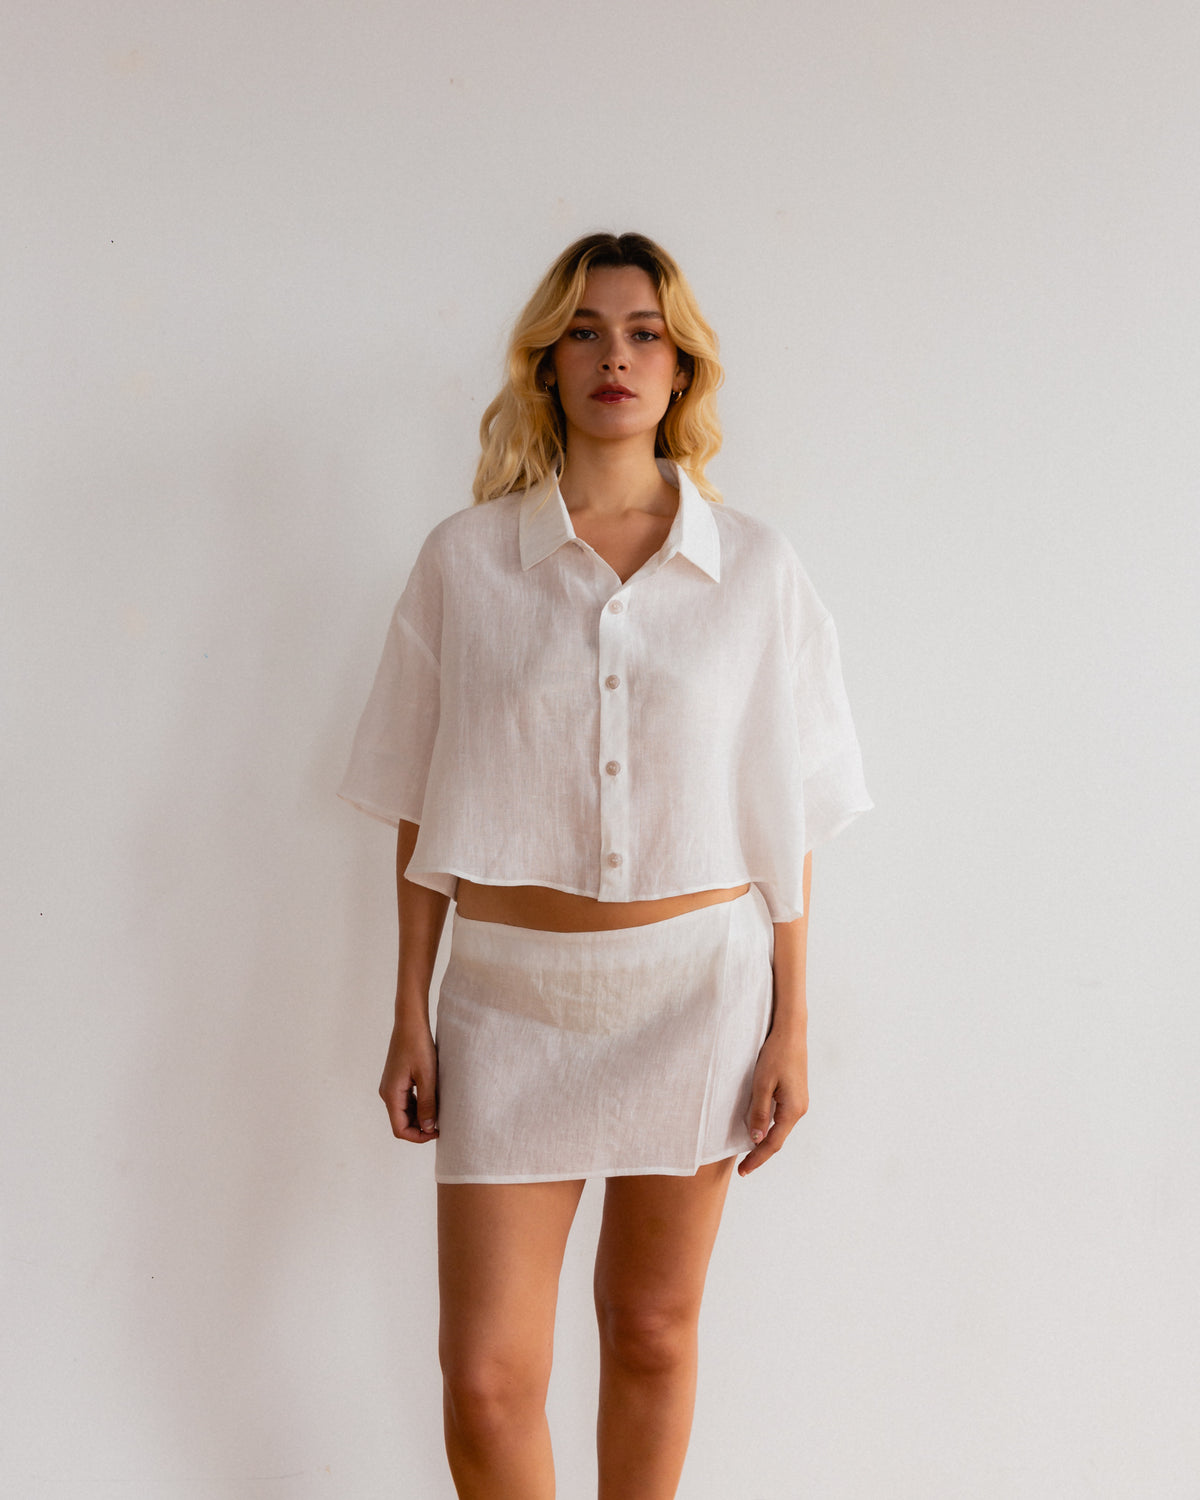 Linen Pleat Skirt - White